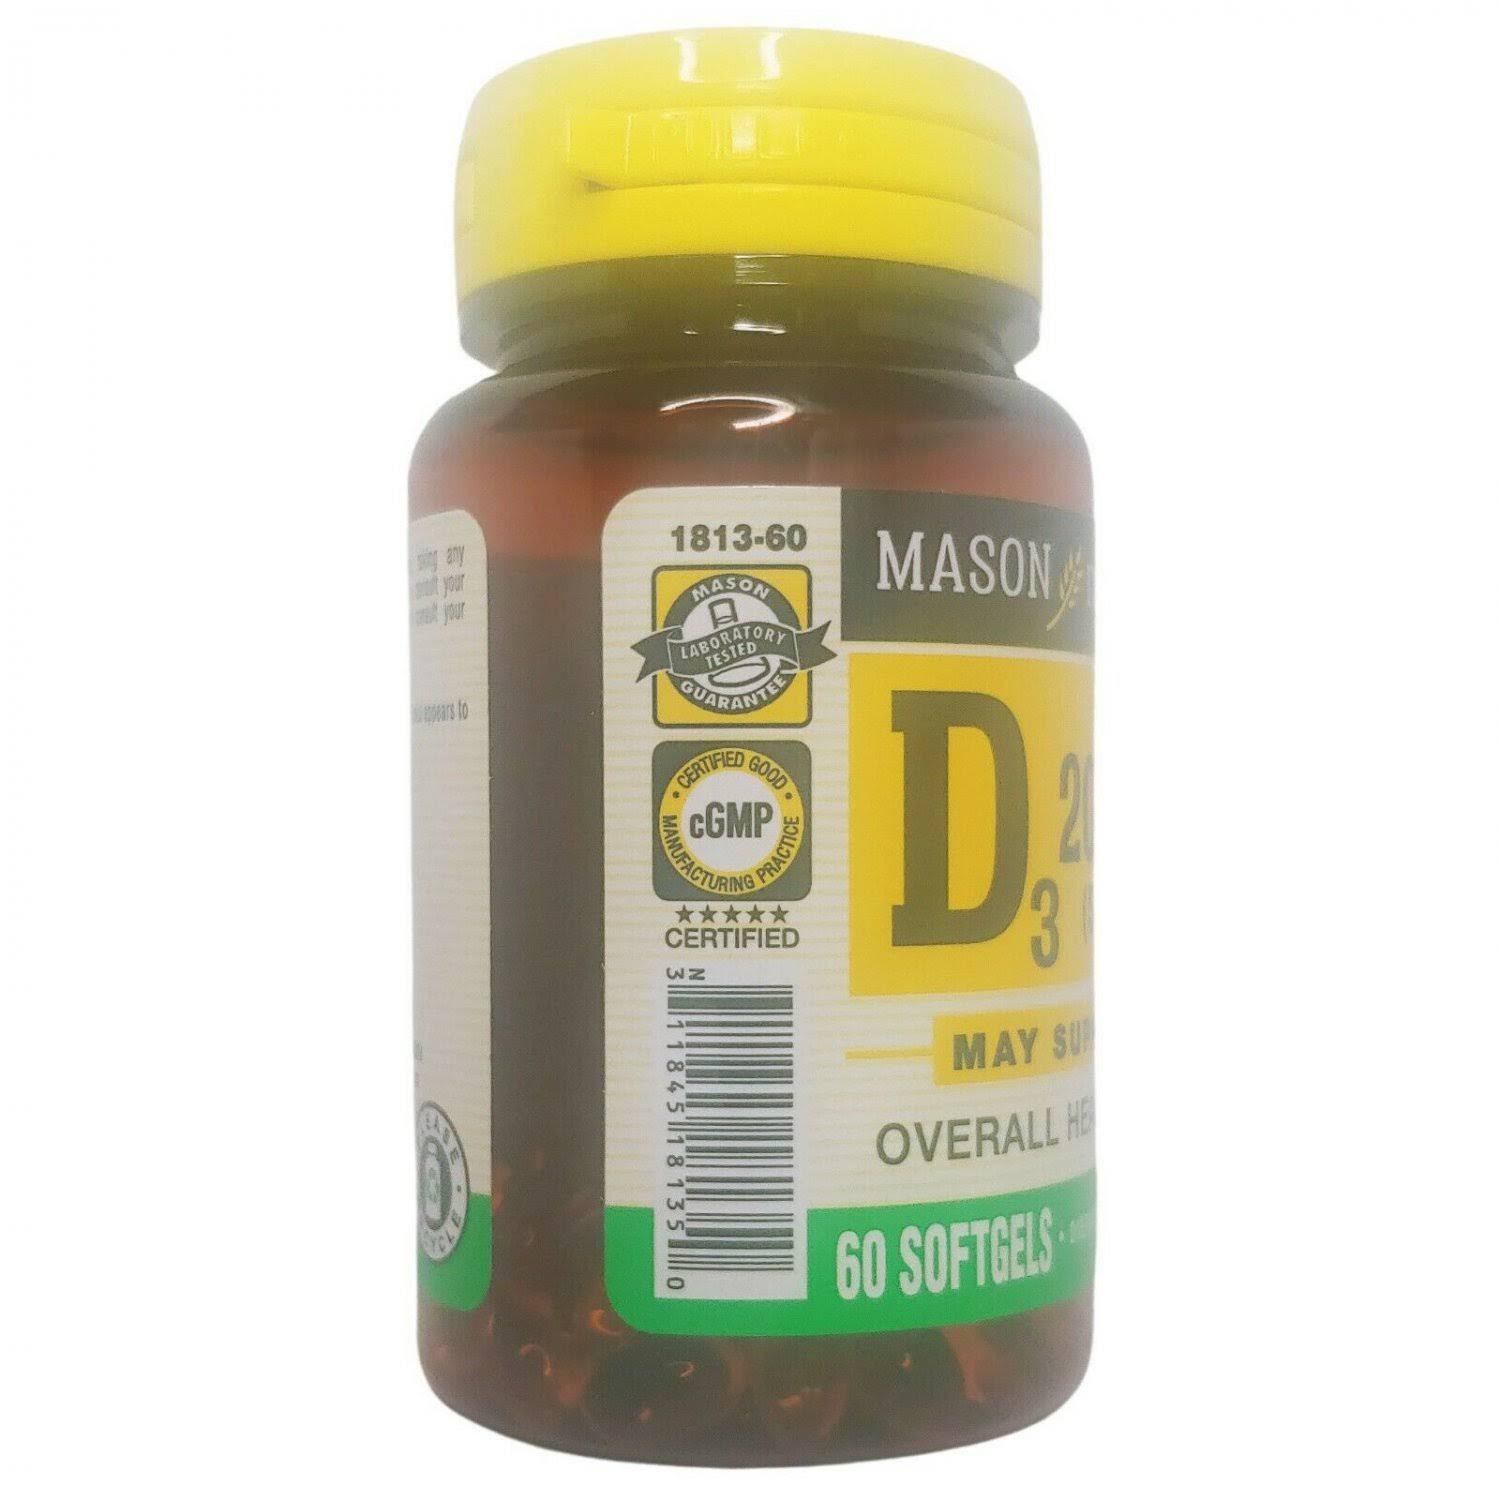 Mason Natural Vitamin D3 2000 IU (50 mcg), 60 Softgels